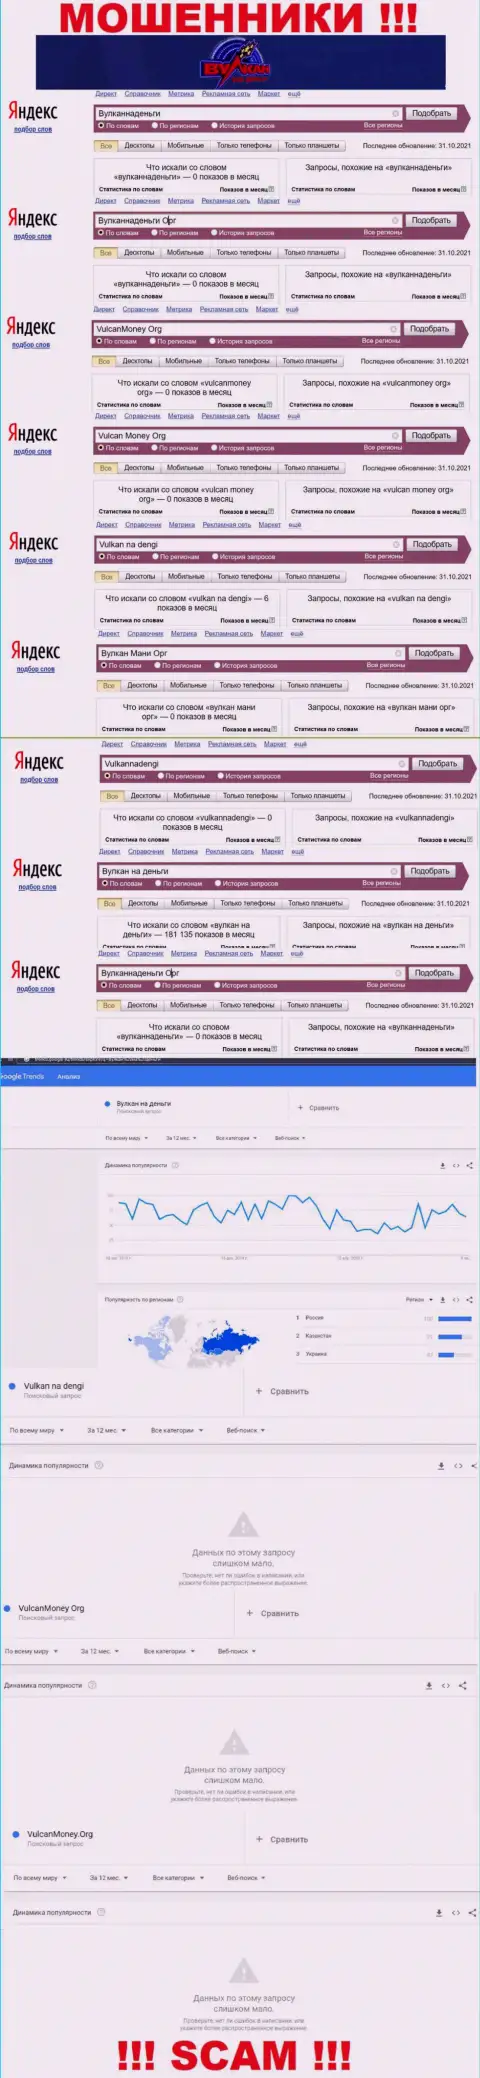 Детальный анализ количества запросов в поисковиках всемирной интернет сети по ворам Vulkan na dengi